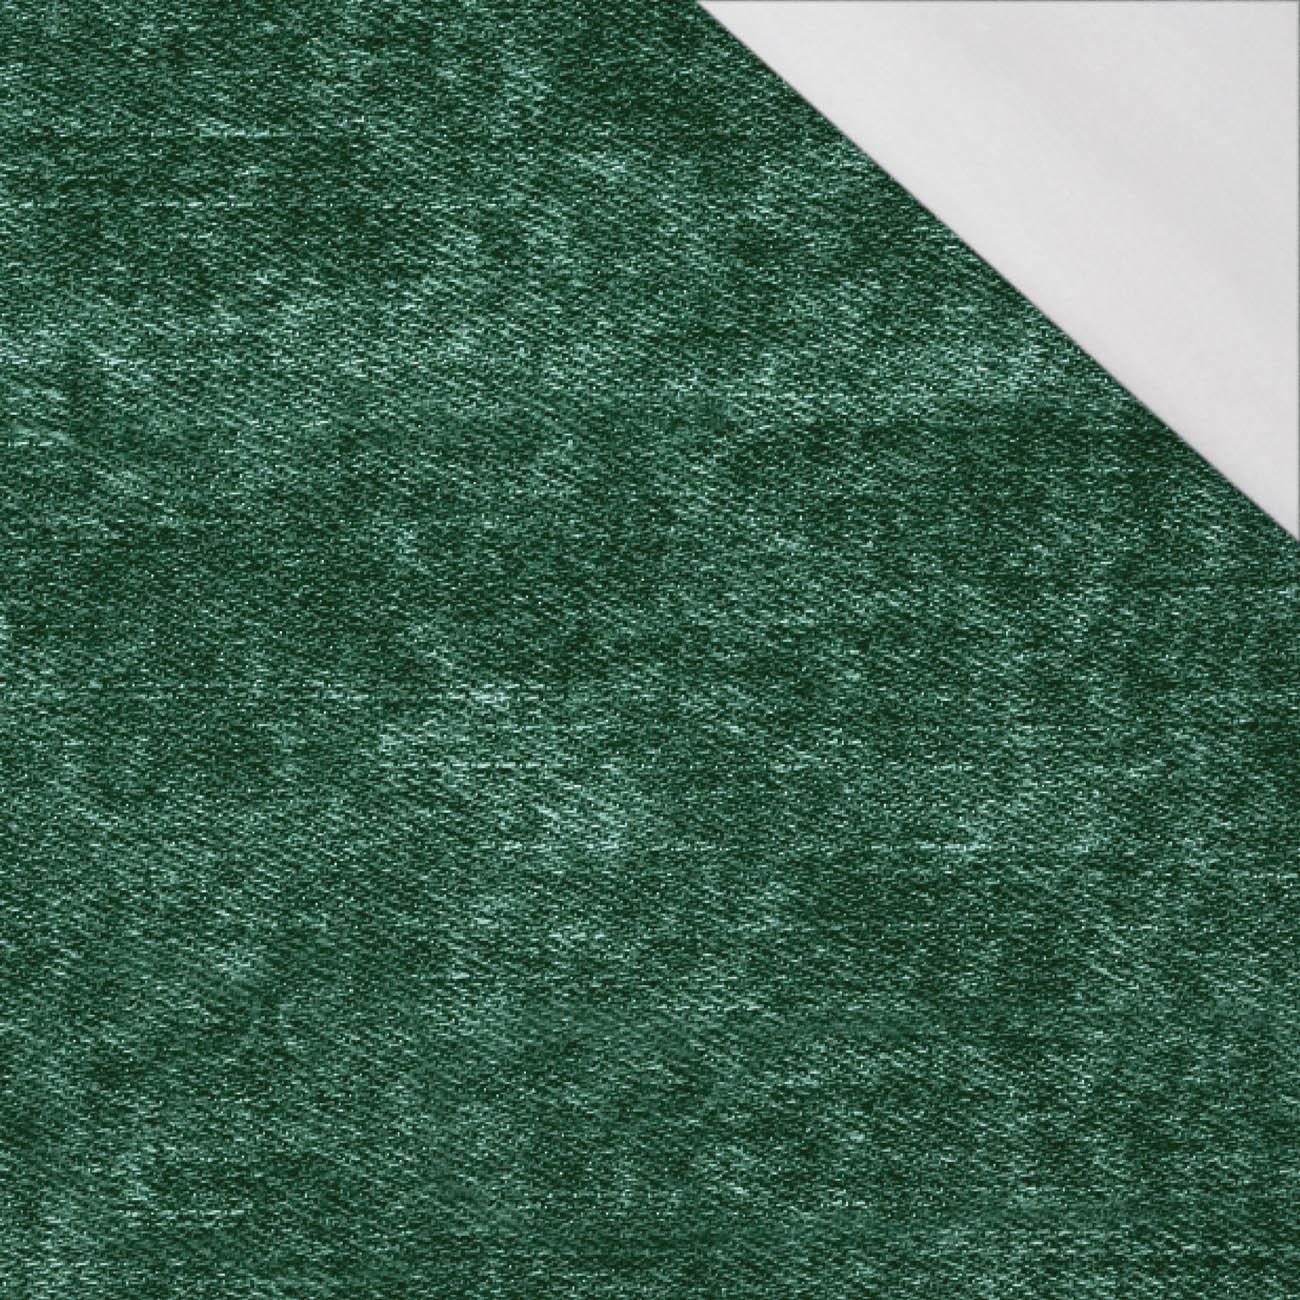 PRZECIERANY JEANS (Butelkowa zieleń) - single jersey z elastanem 